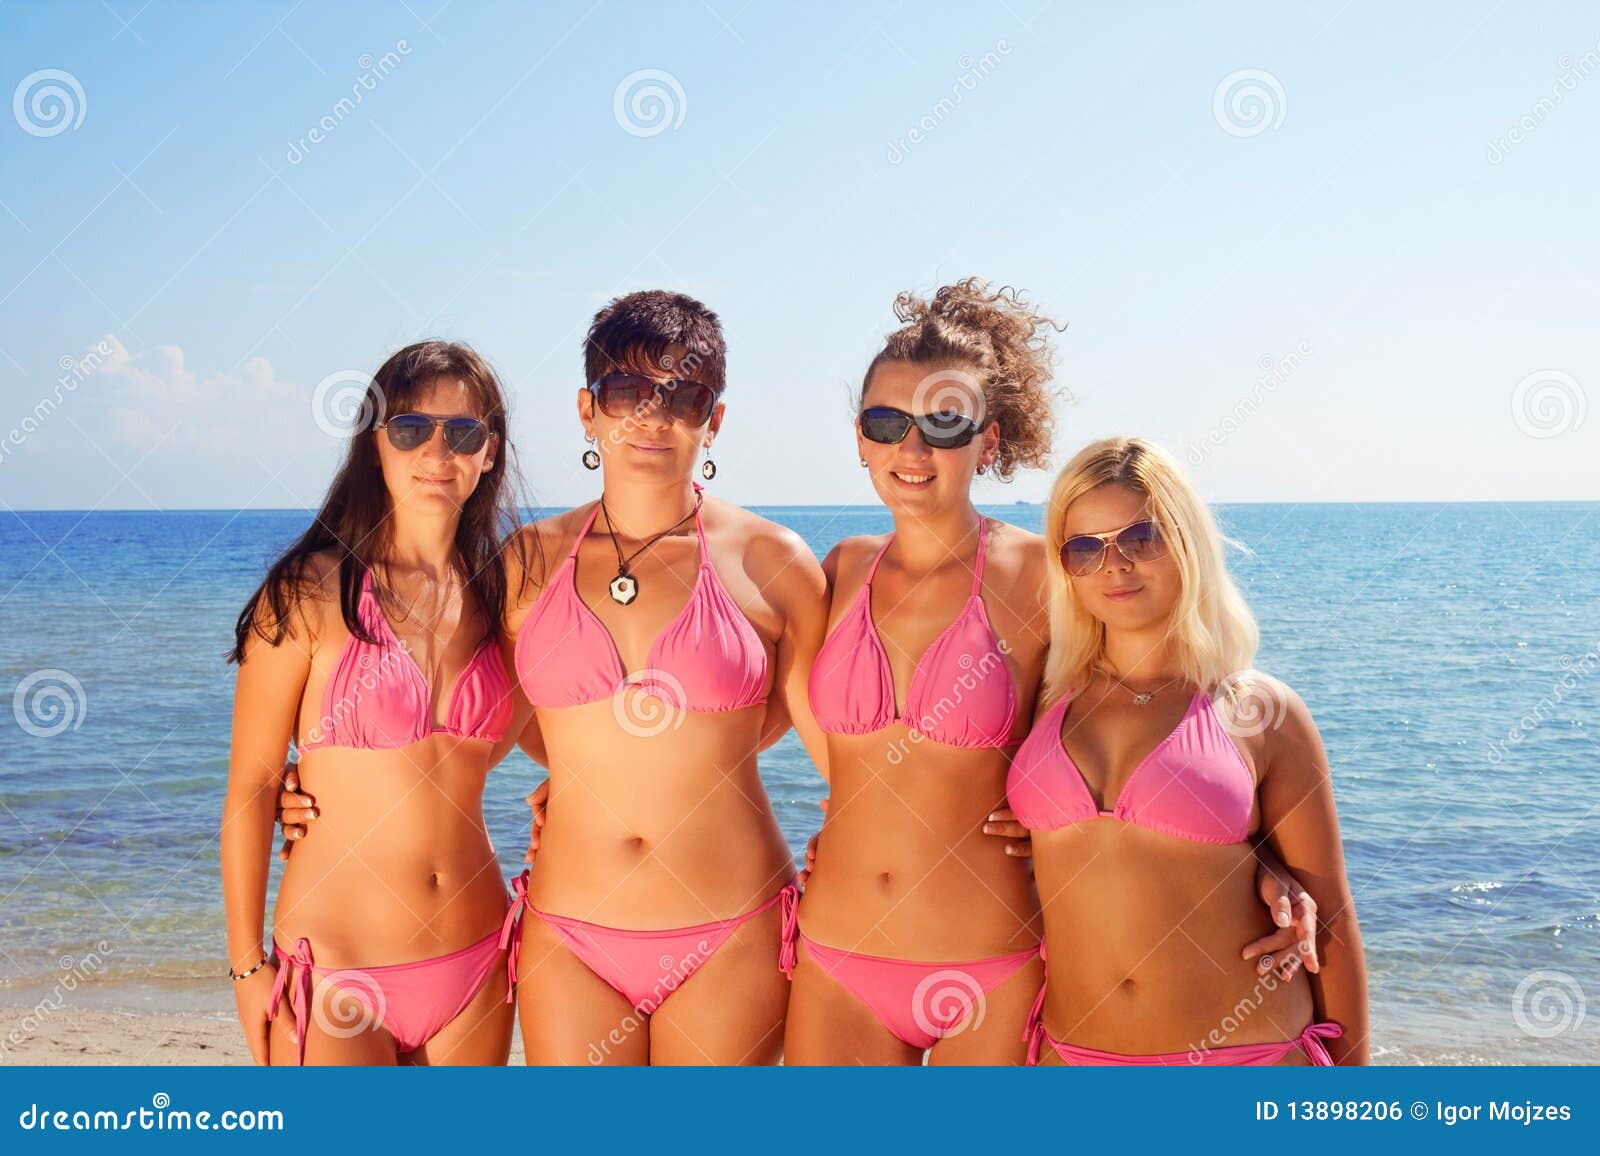 Фото по запросу Сексуальные девушки пляже